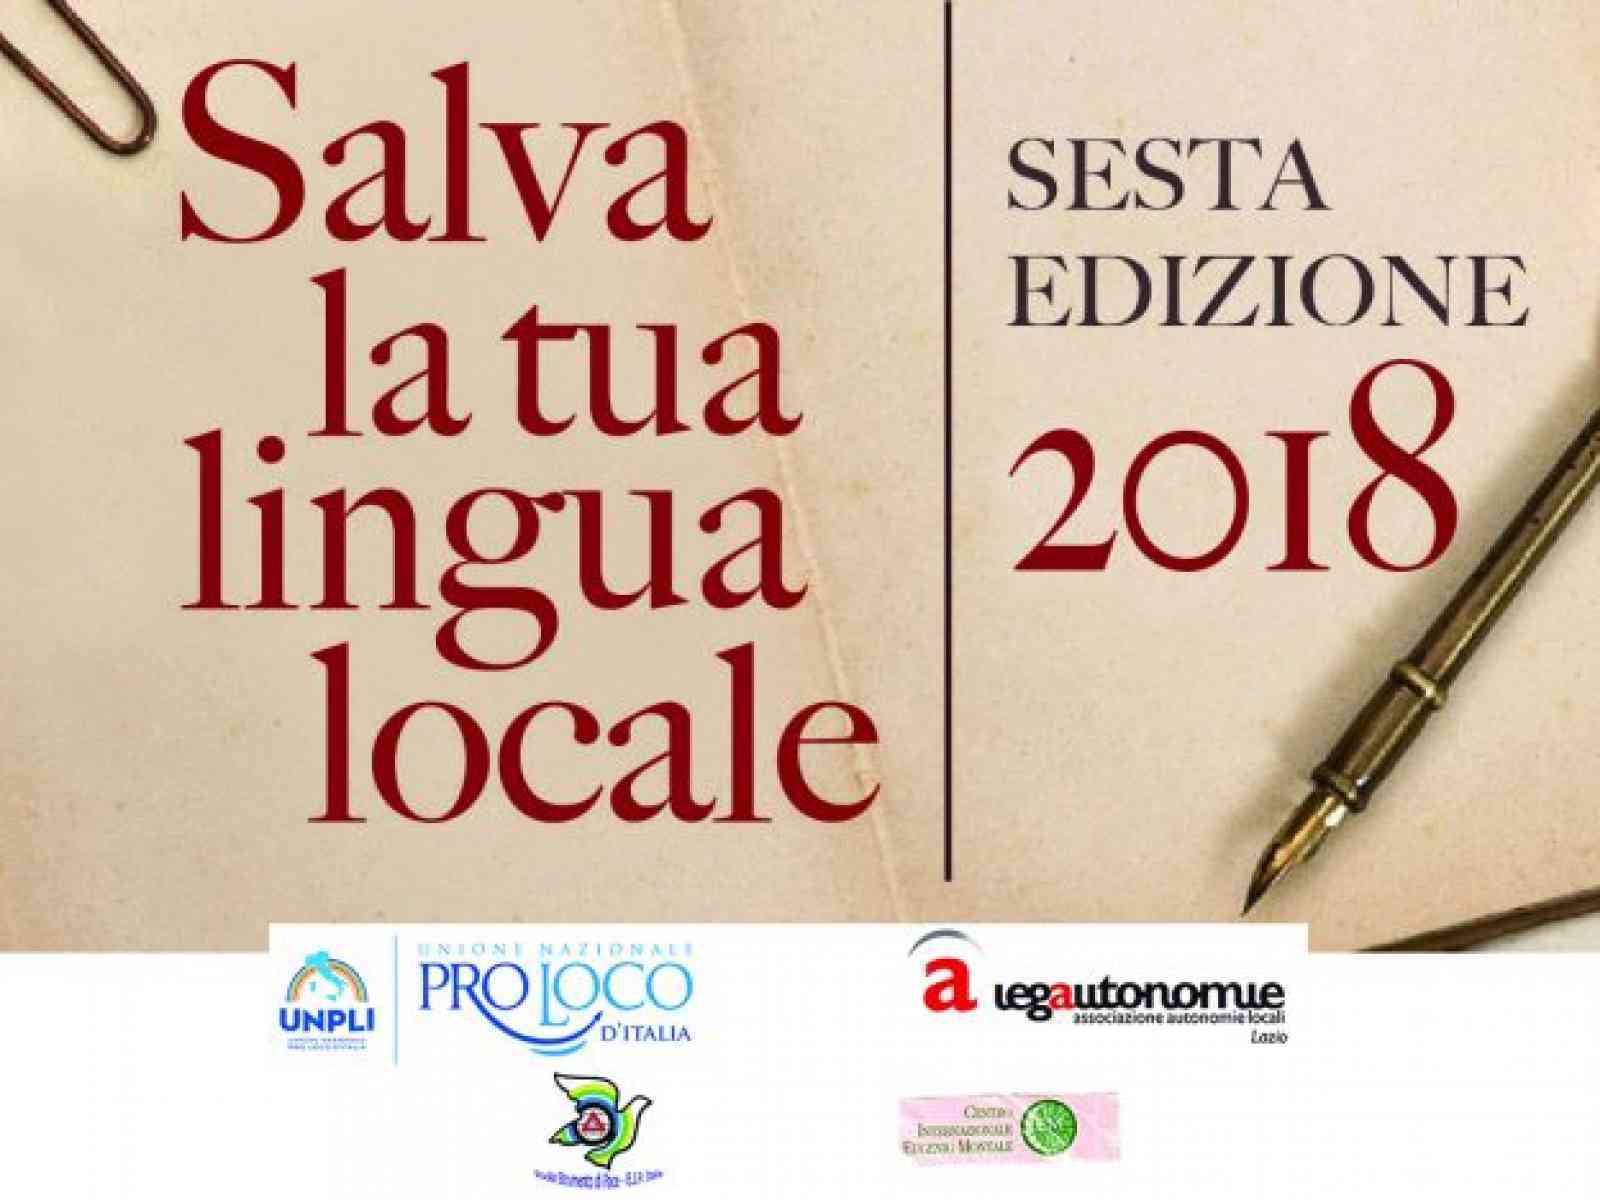 Immagine articolo: “Salva la tua lingua locale“. Per il 2° anno consecutivo la Pro Loco Gattopardo Belìce conquista una menzione speciale